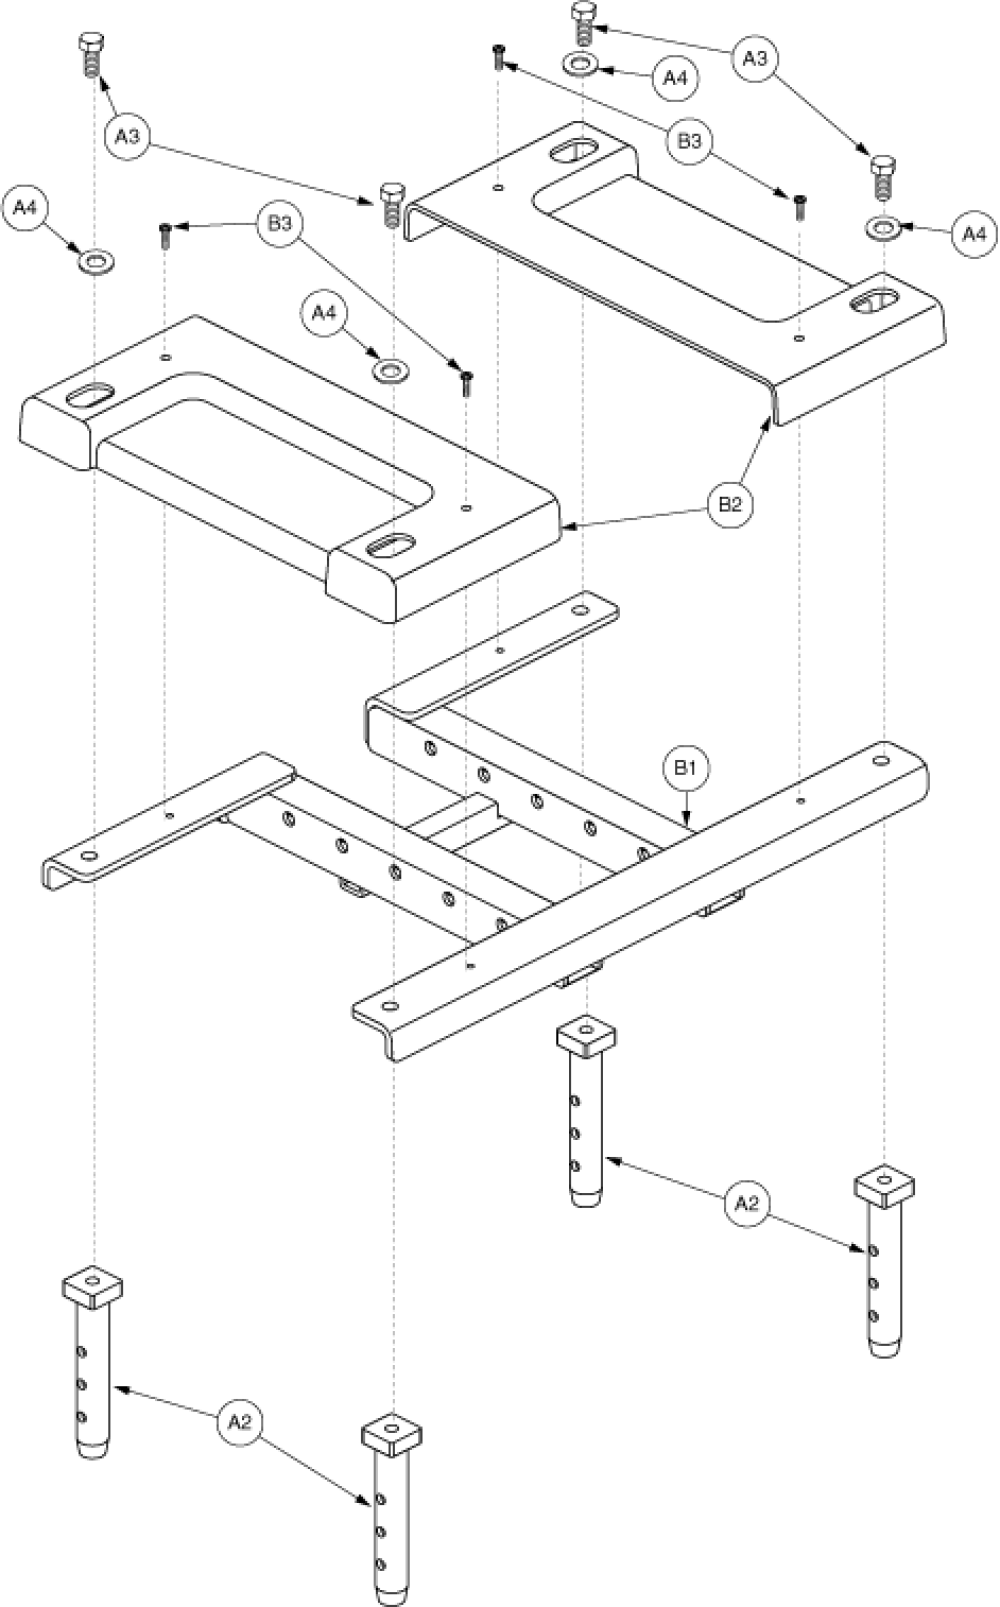 Manual Tilt Lower - Q6000 Style parts diagram